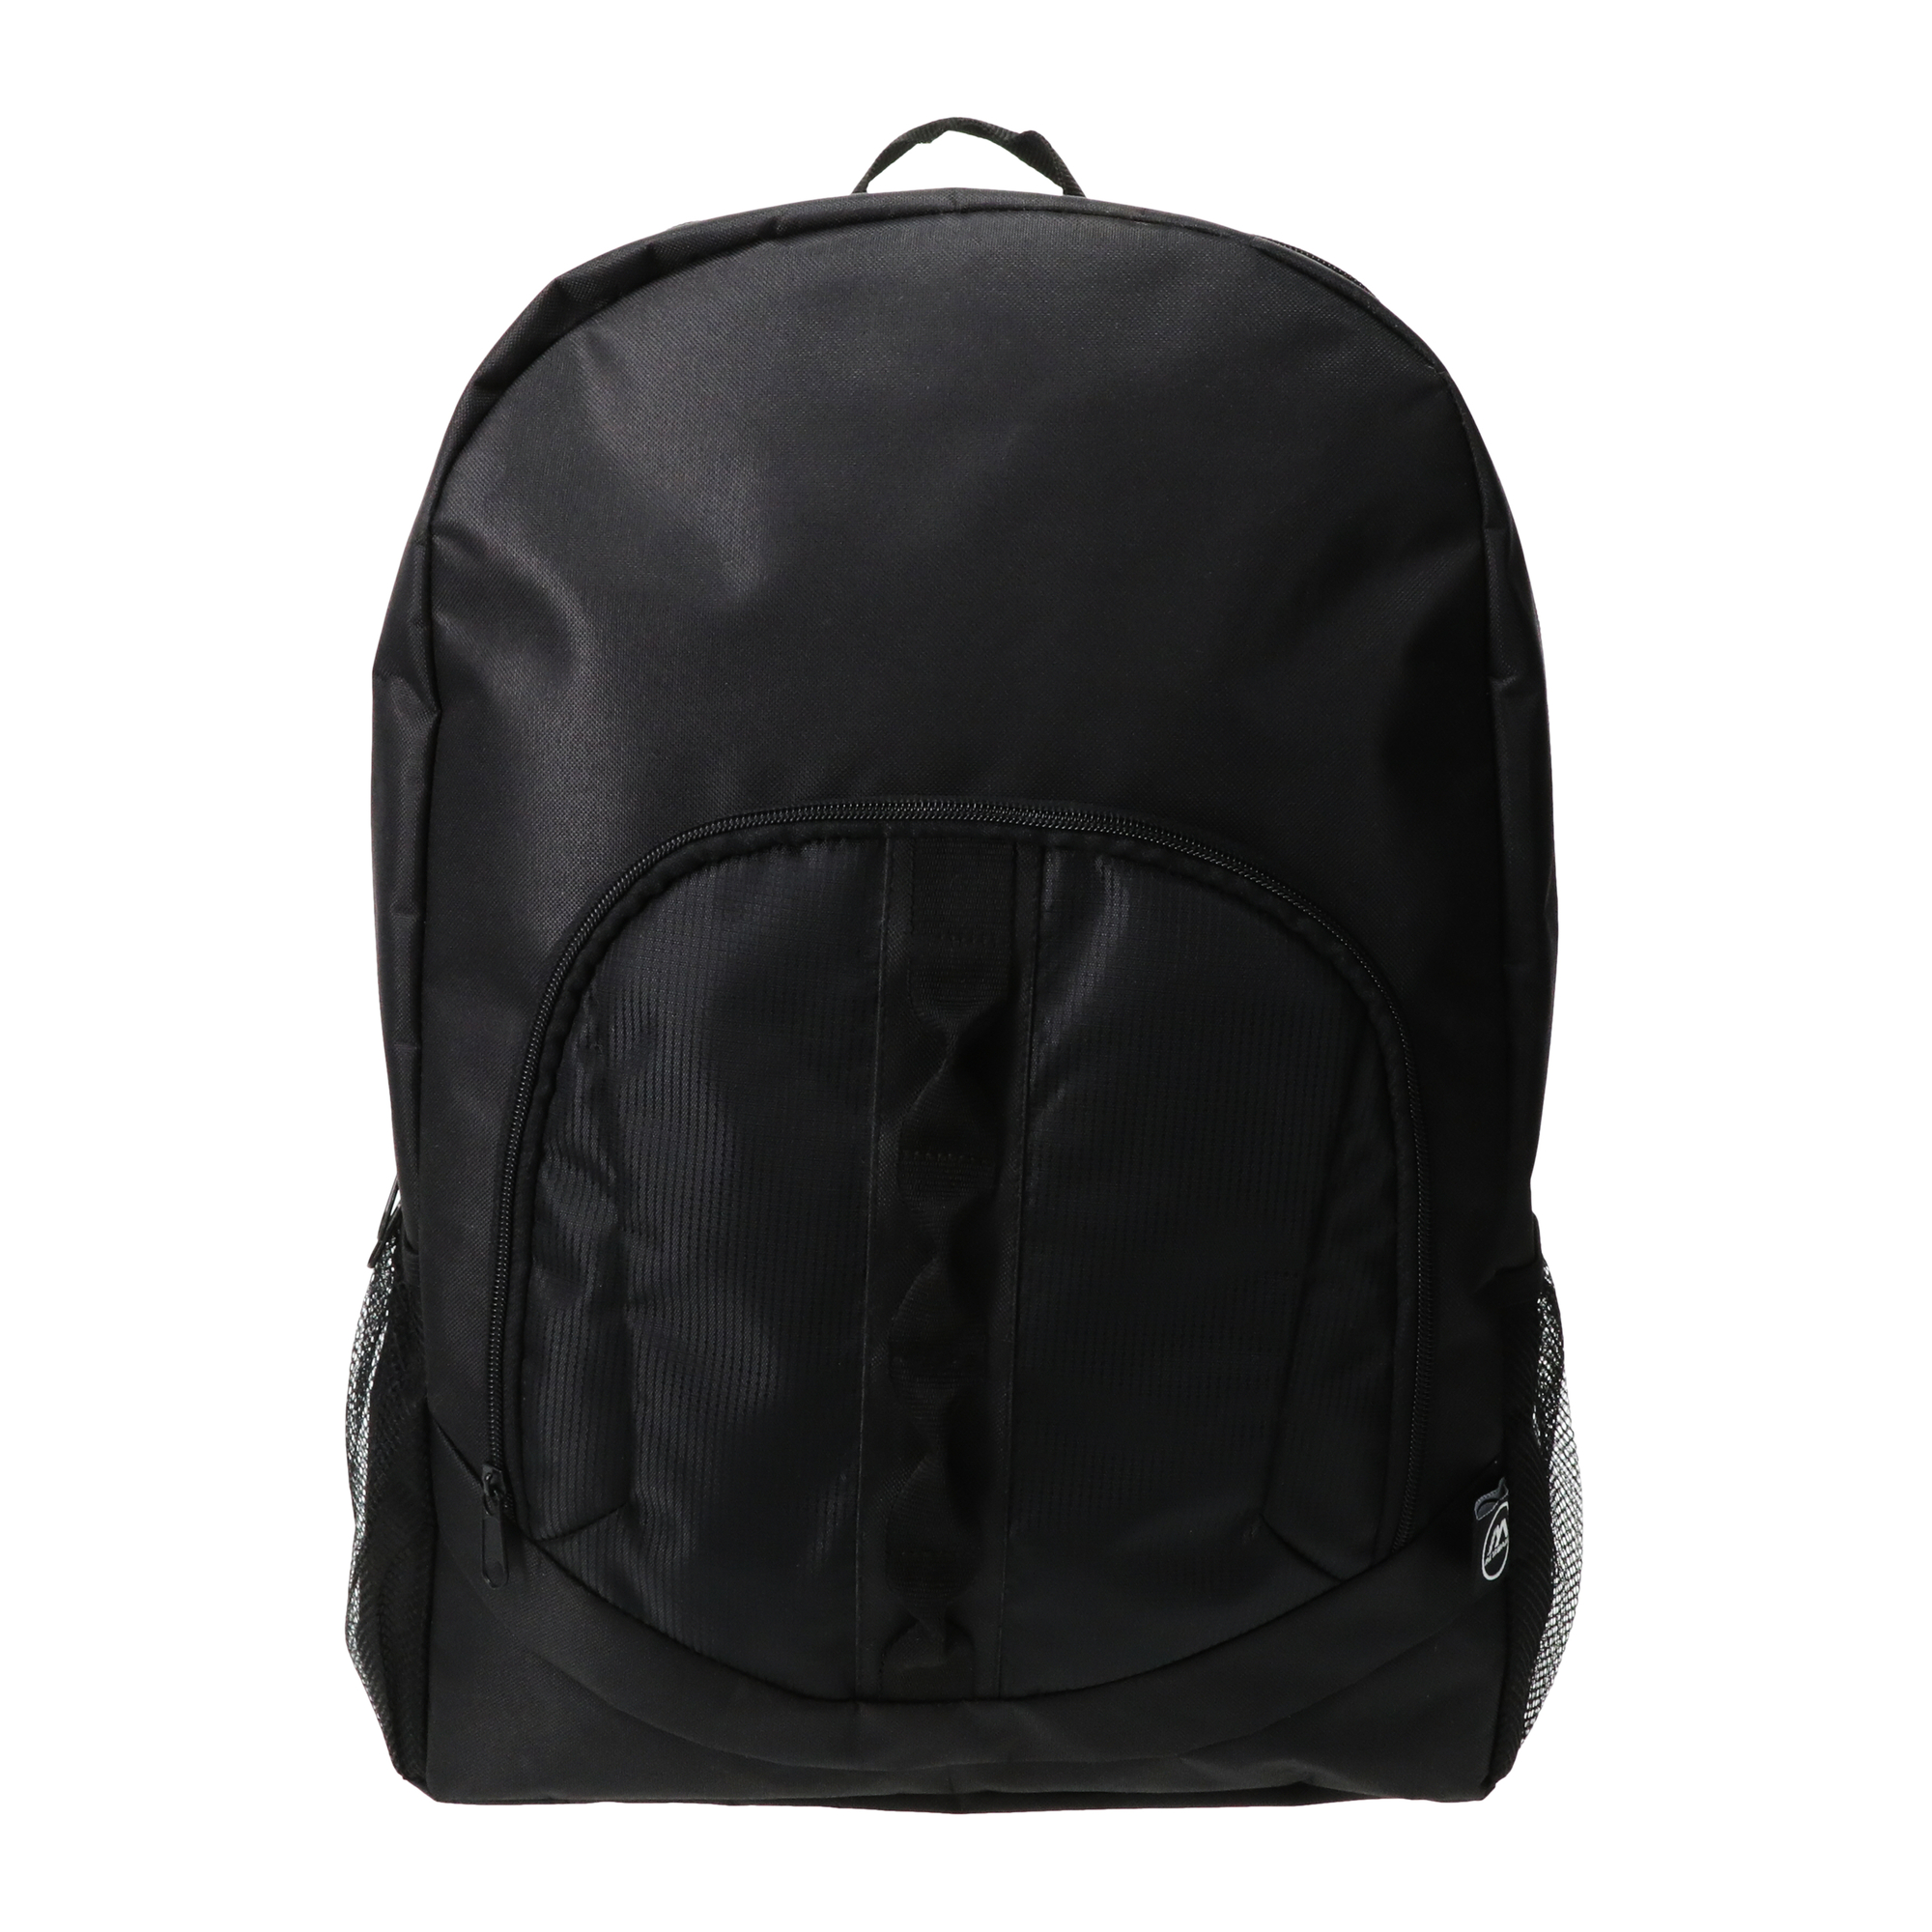 single webbing backpack 17in